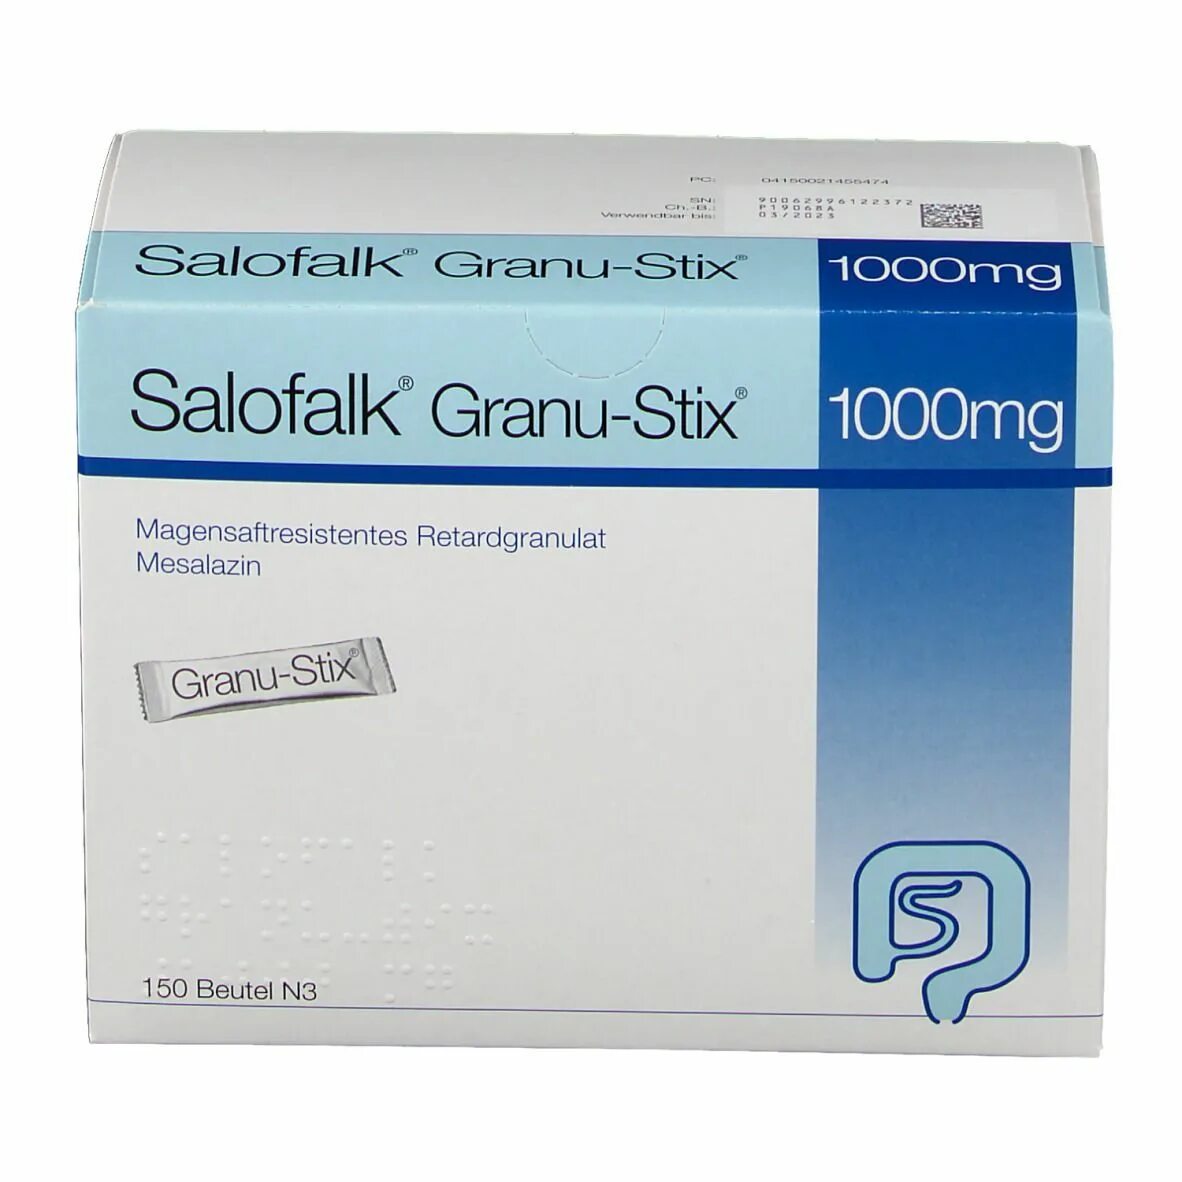 Salofalk 1000 MG. Salofalk Granu-Stix 1000mg. Salofalk Granu-Stix 1000mg magensaftresistent. Salofalk 1000mg eu.